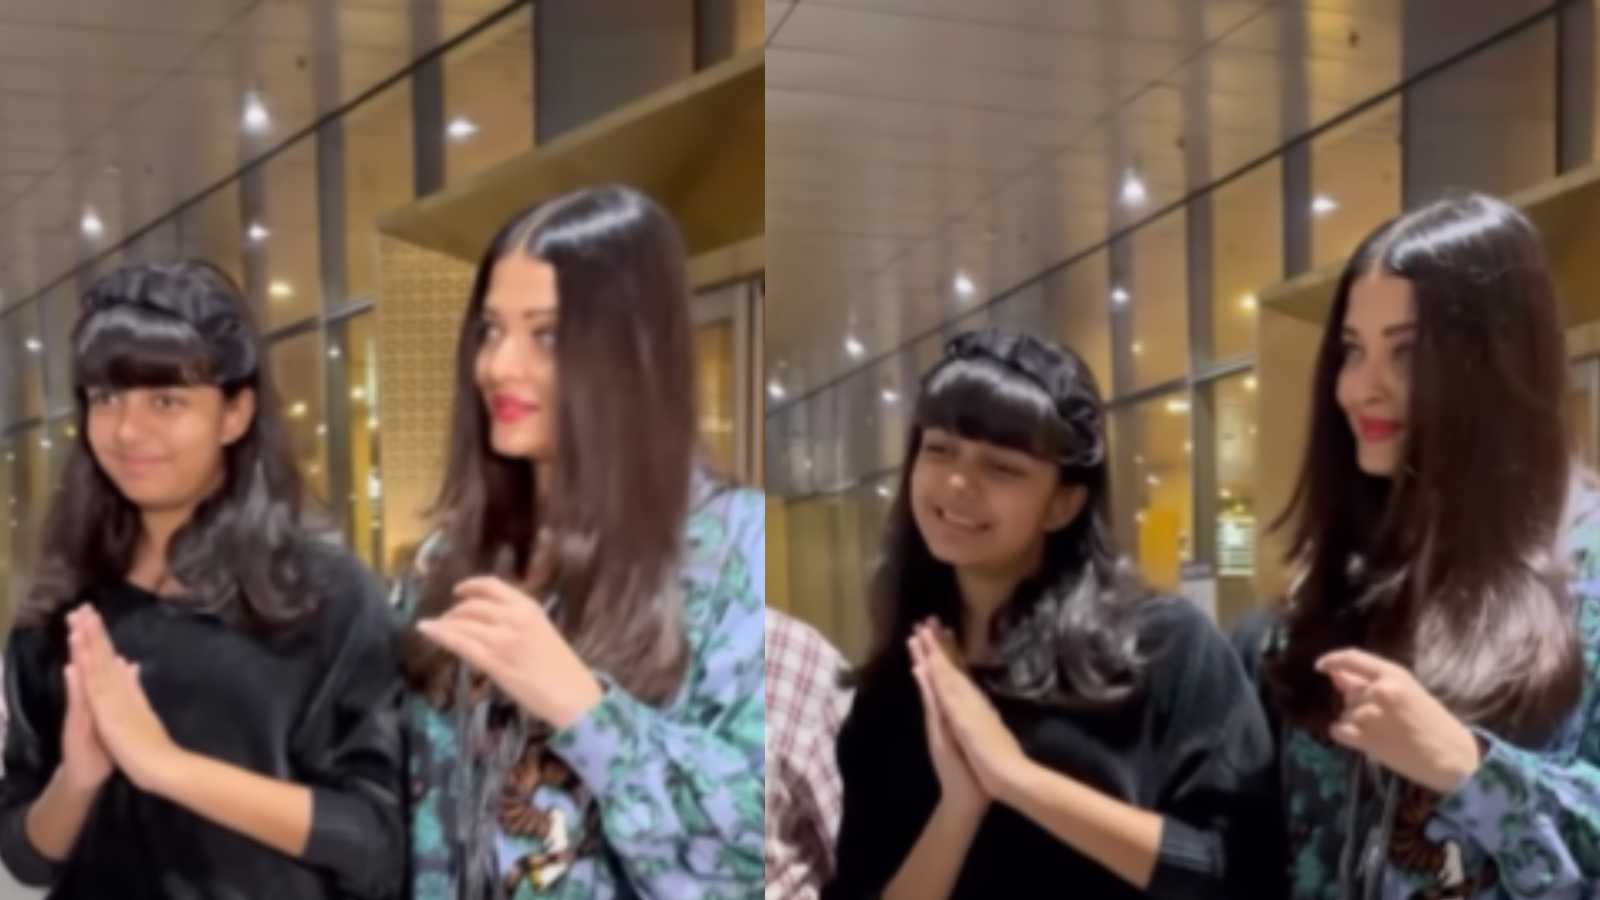 'Fake namaste spotted' : Aishwarya Rai Bachchan and daughter Aaradhya greet paparazzi, netizens react